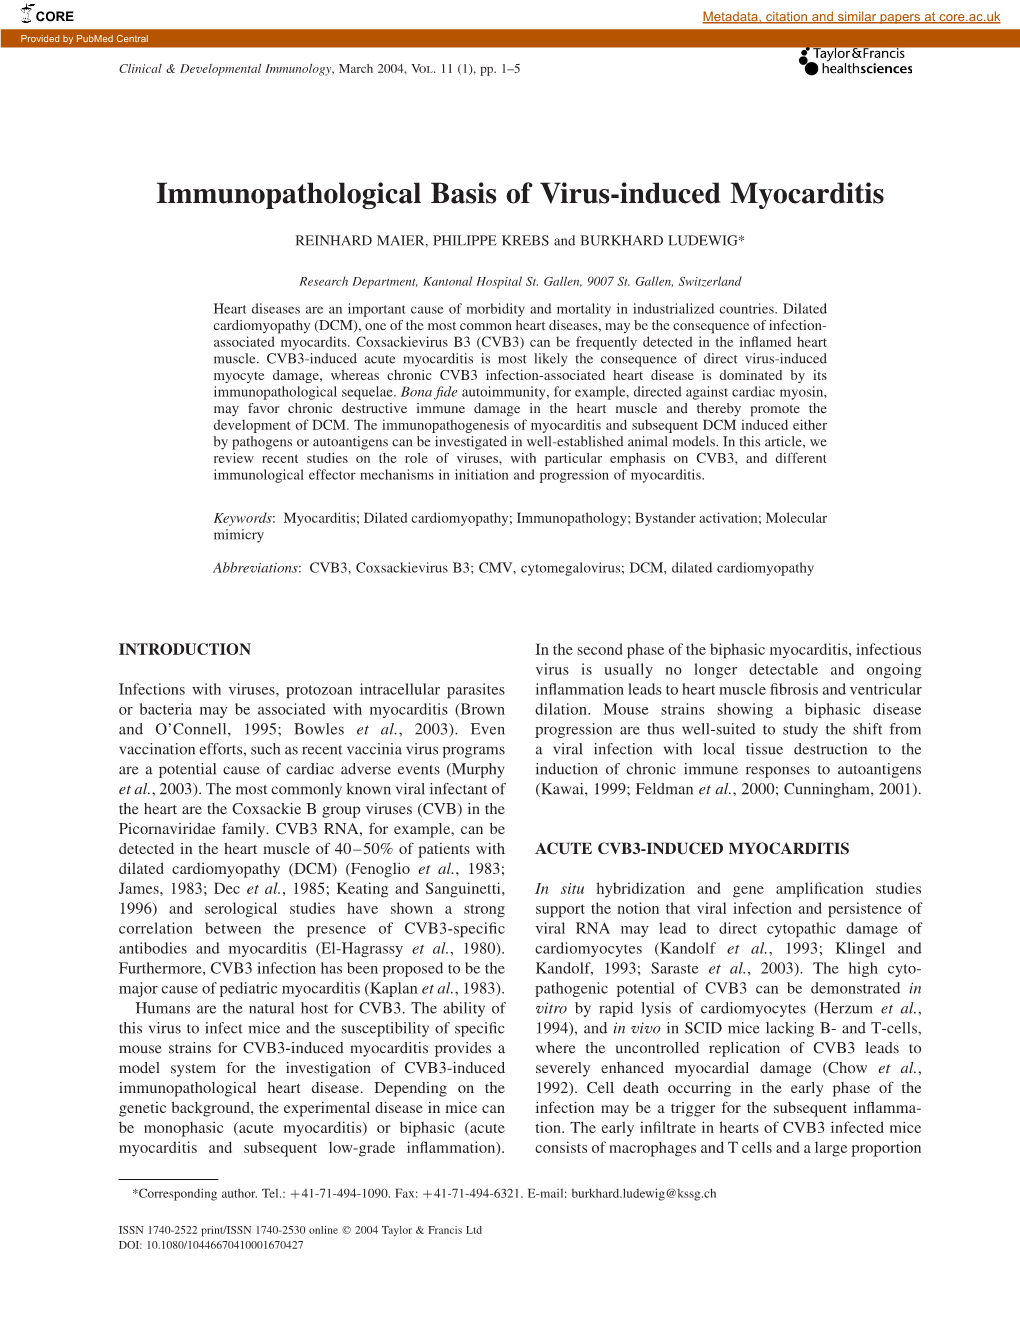 Immunopathological Basis of Virus-Induced Myocarditis